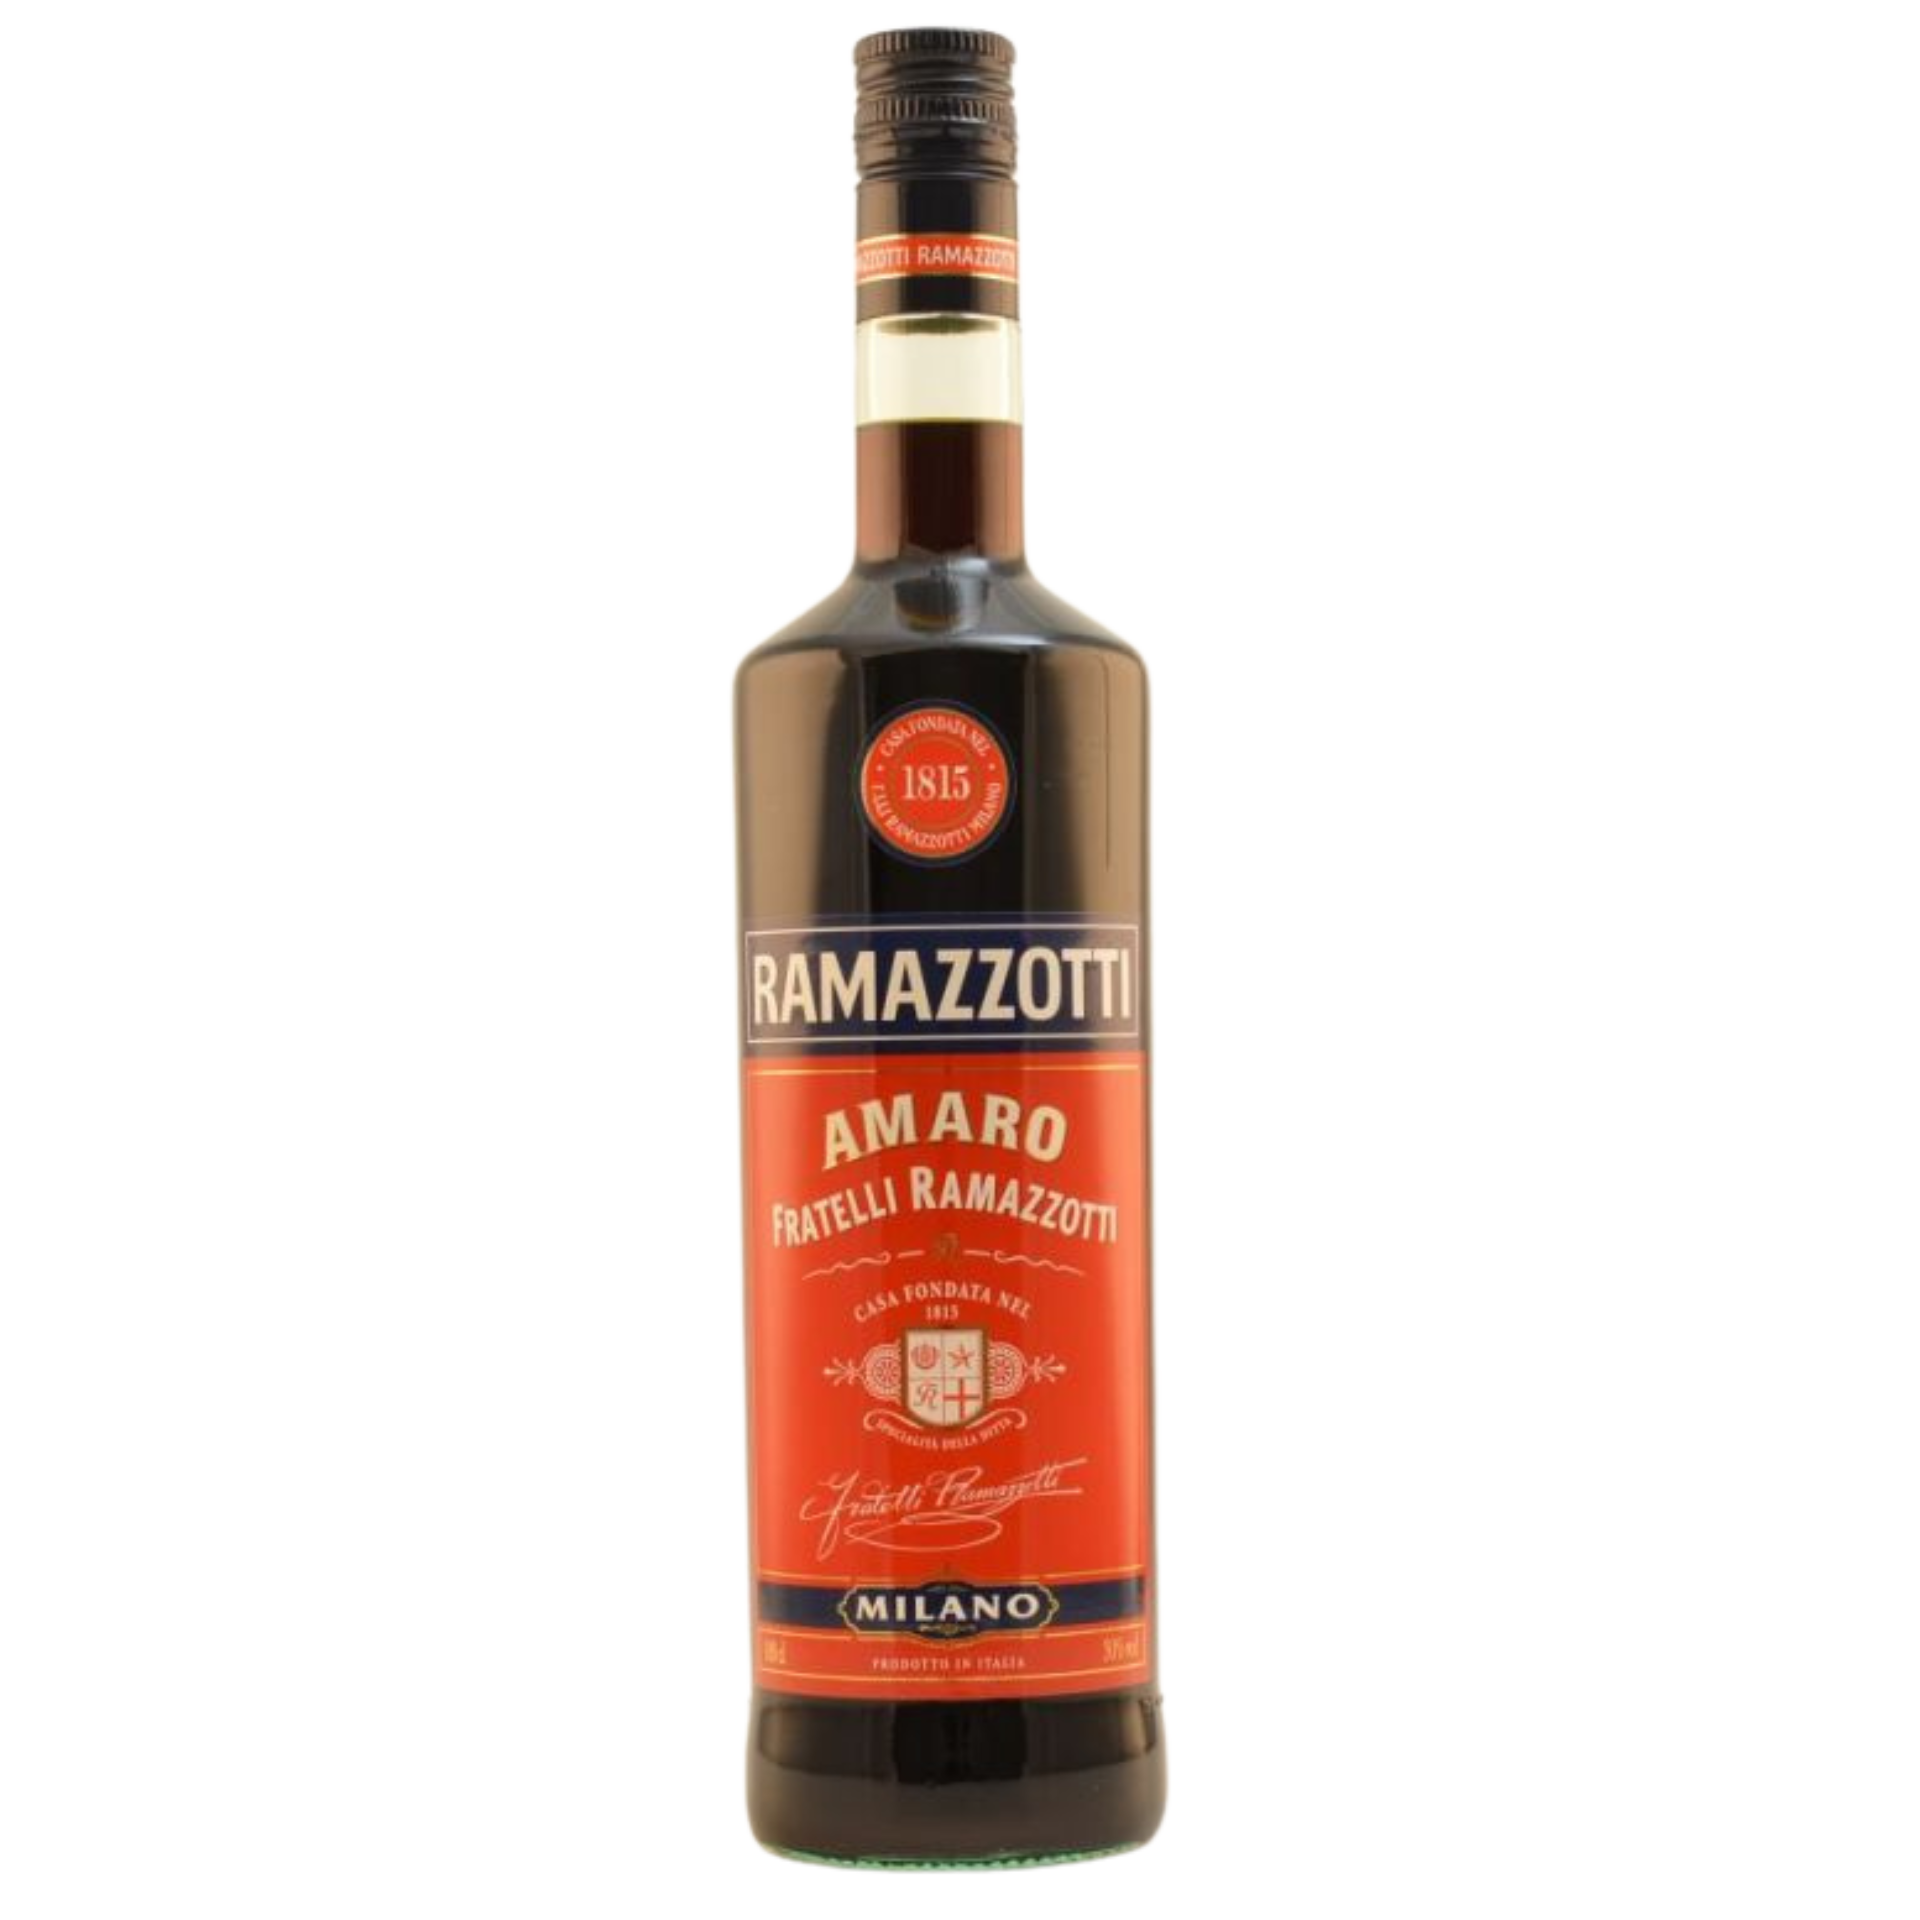 Ramazzotti Amaro 30% 1,0l